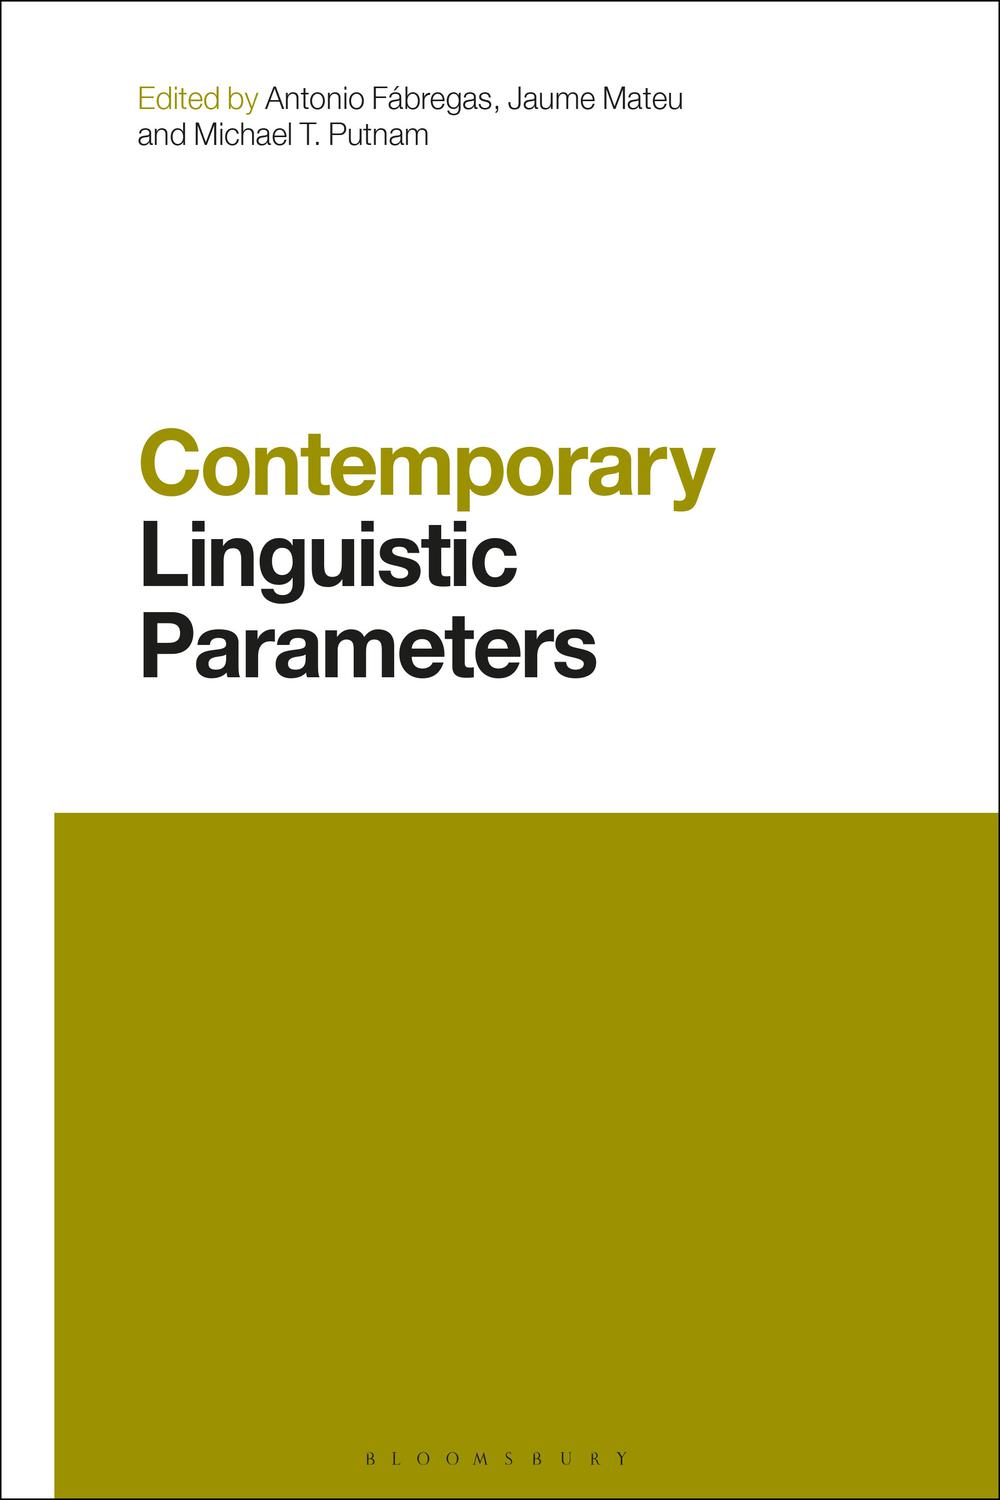 Contemporary Linguistic Parameters - Antonio Fabregas, Jaume Mateu, Michael Putnam